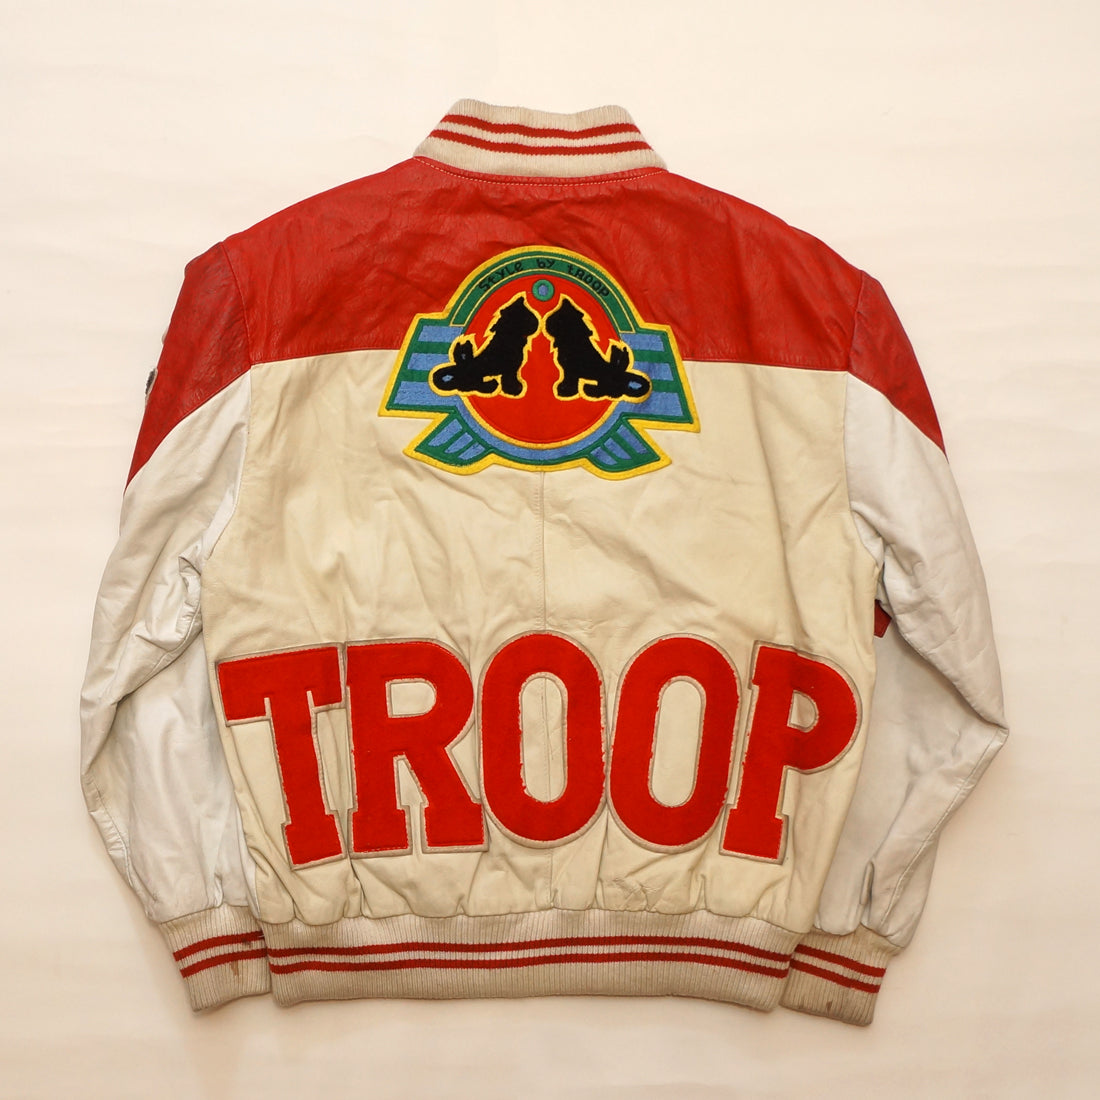 Vintage "STYLE BY TROOP" Leather Troop Jacket